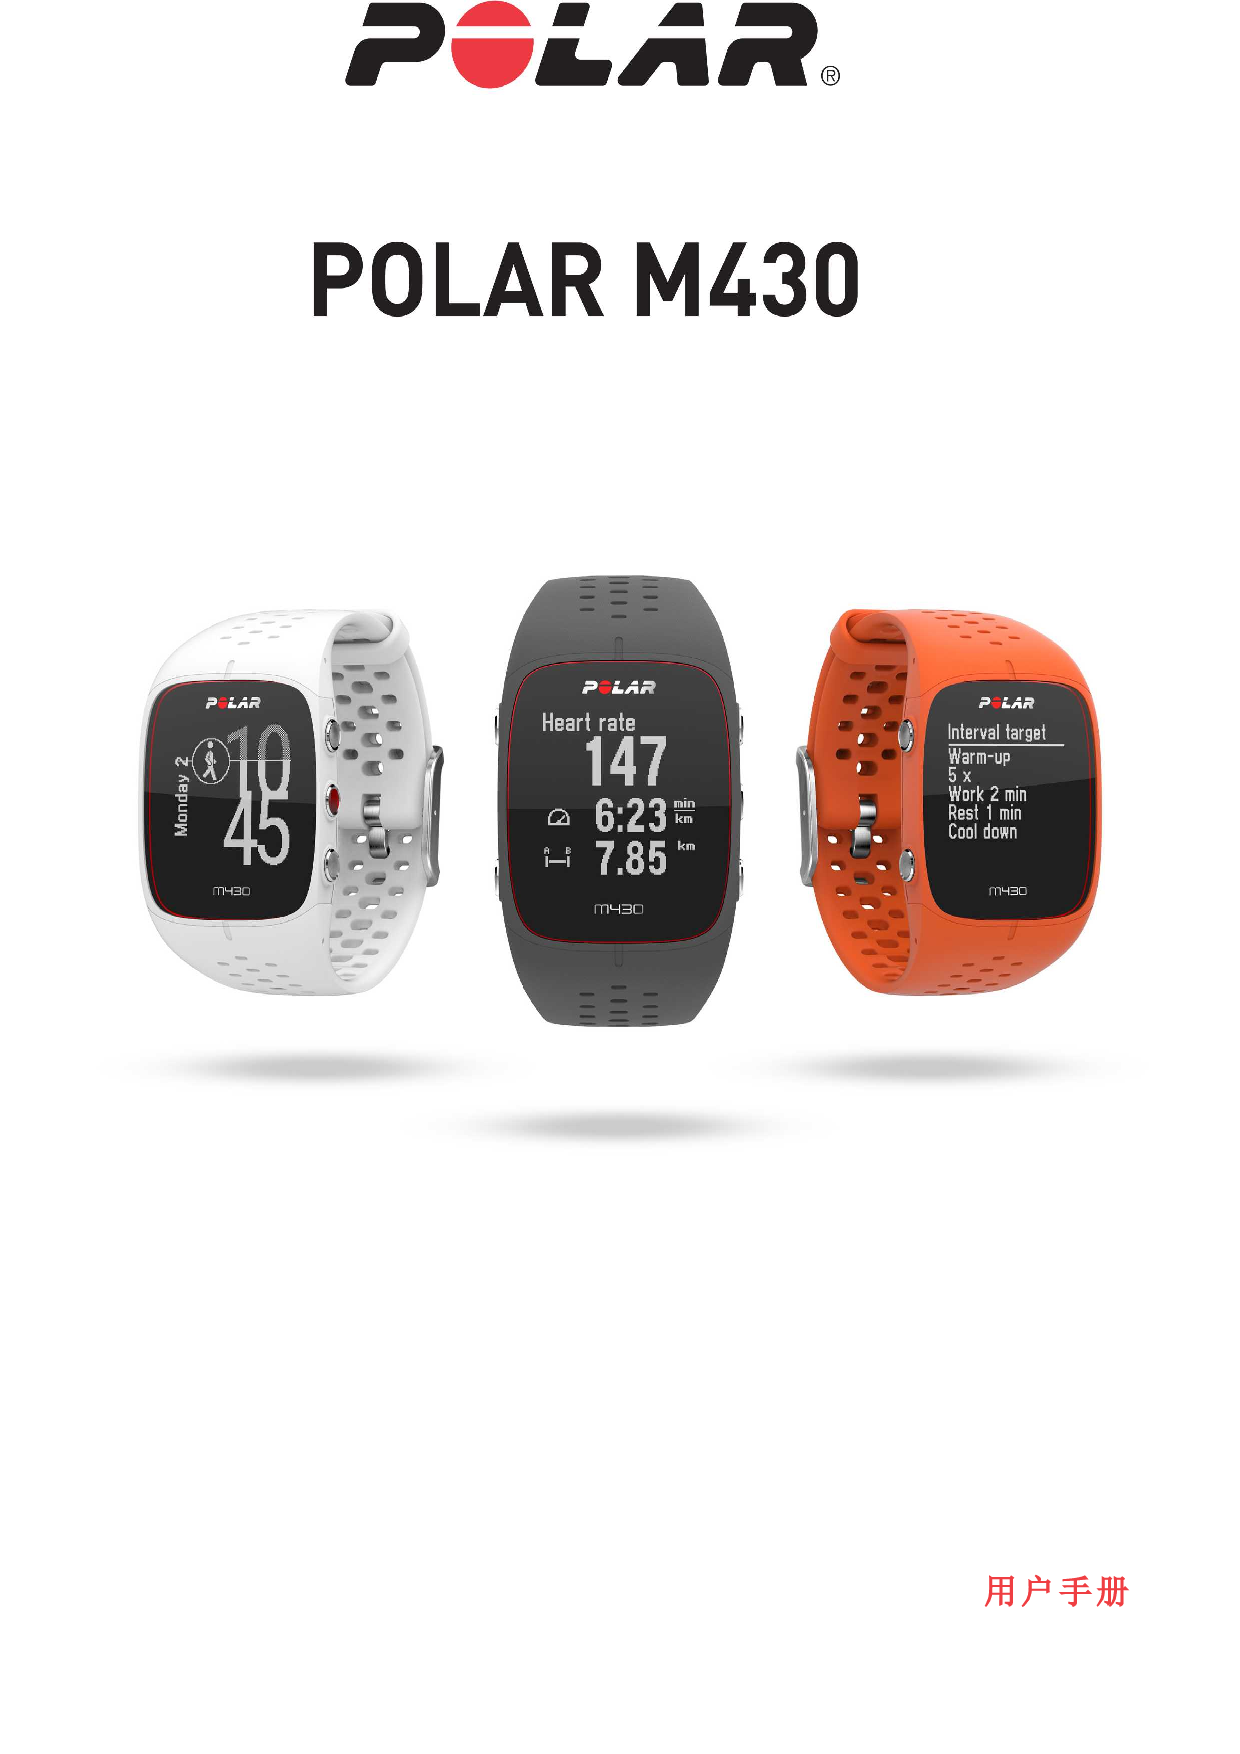 Polar M430 用户手册 封面